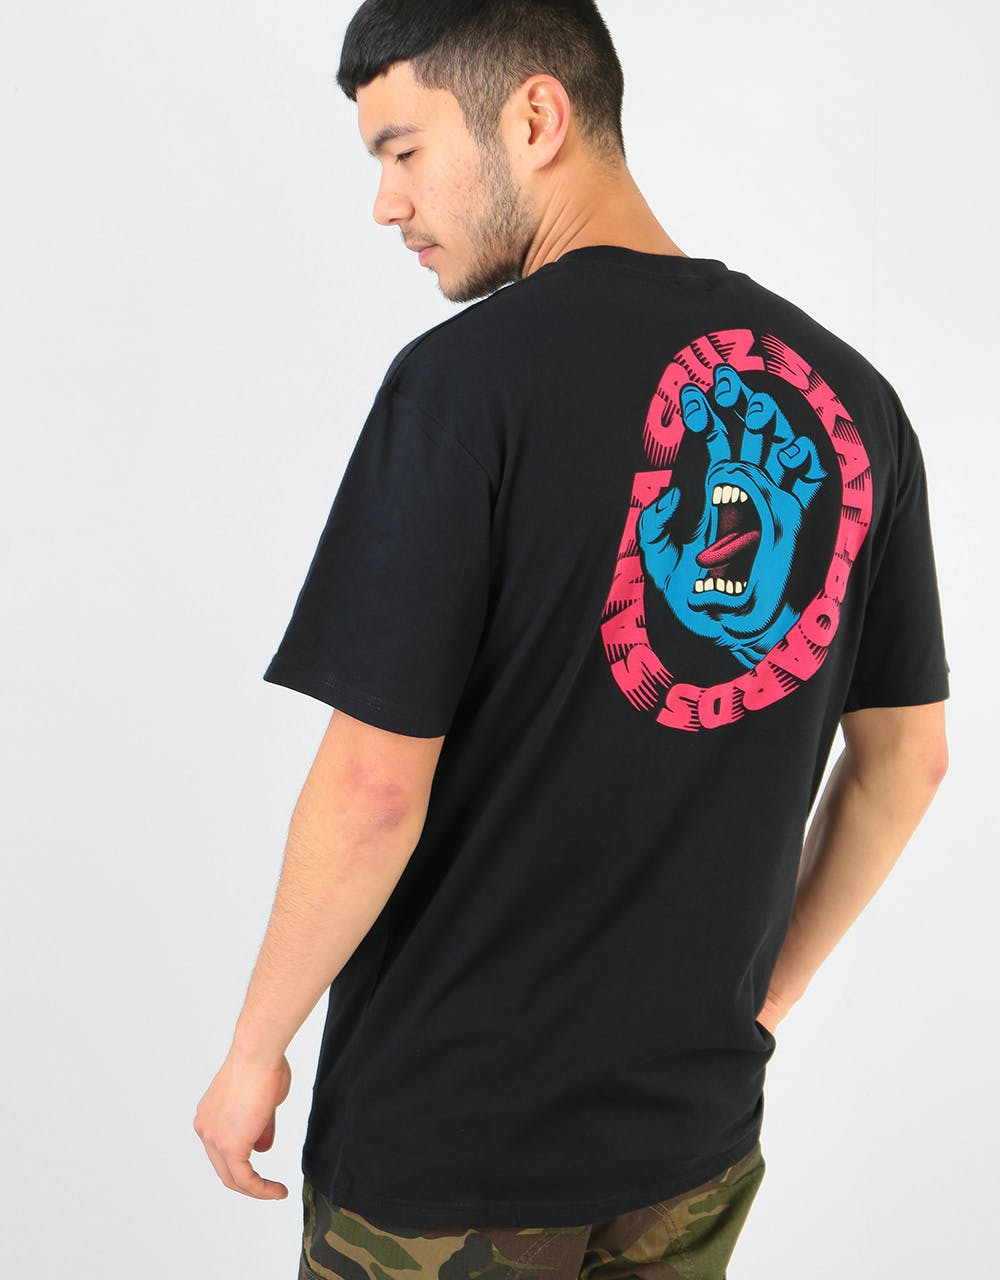 Santa Cruz Scream T-Shirt - Black